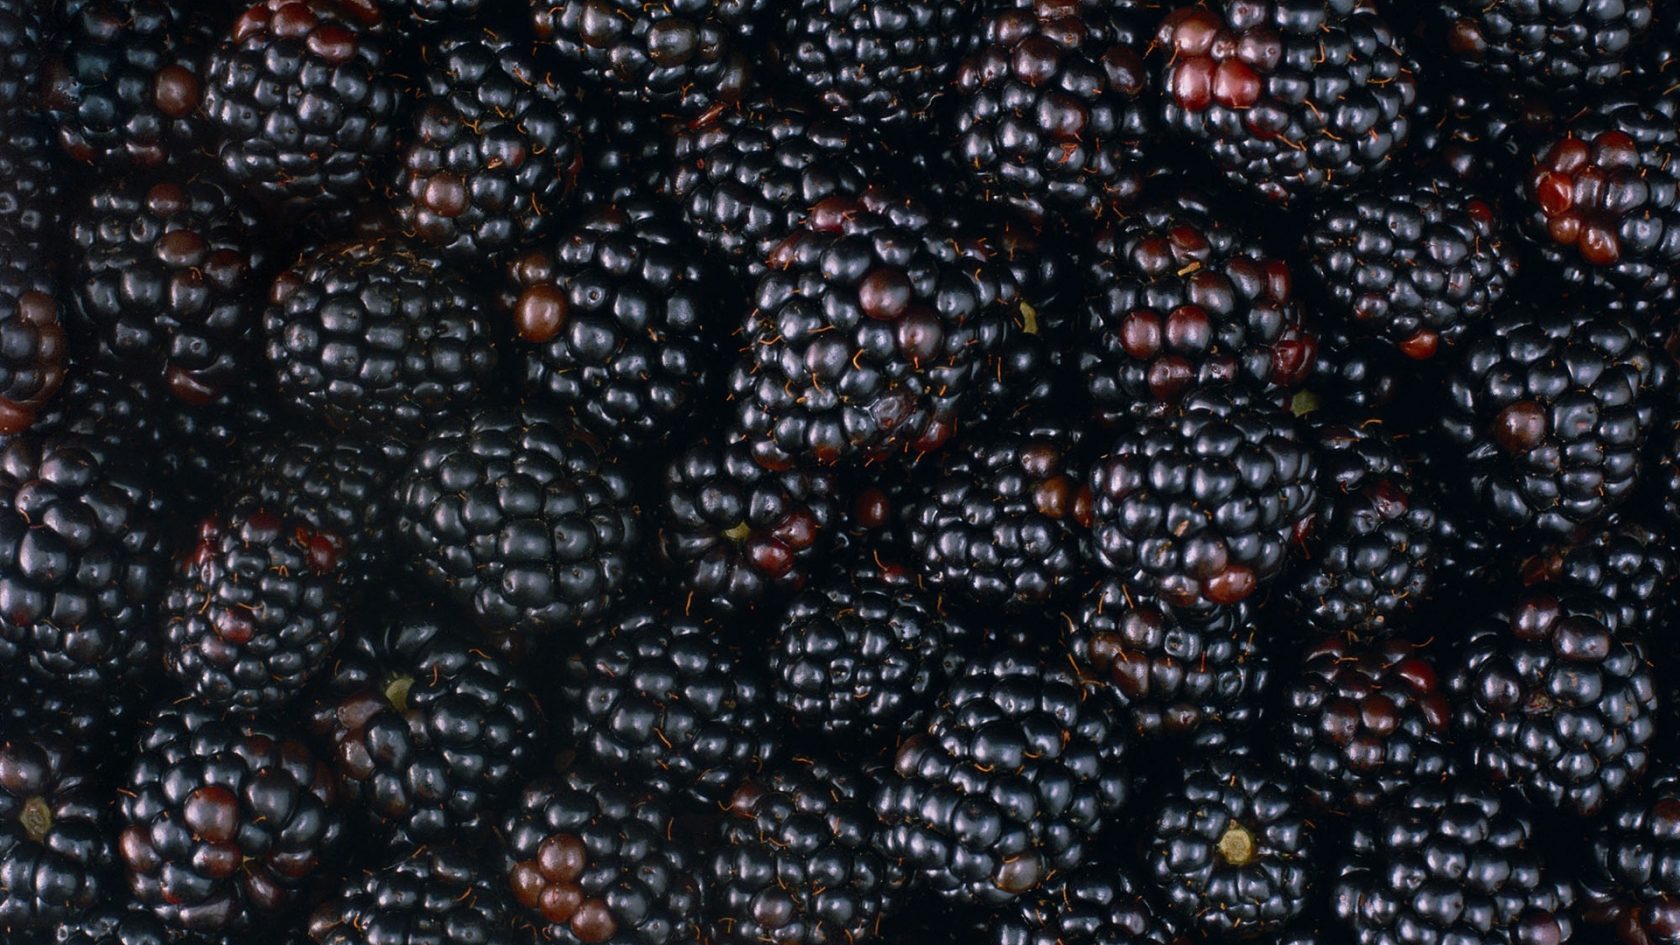 Tasty Blackberries for 1680 x 945 HDTV resolution